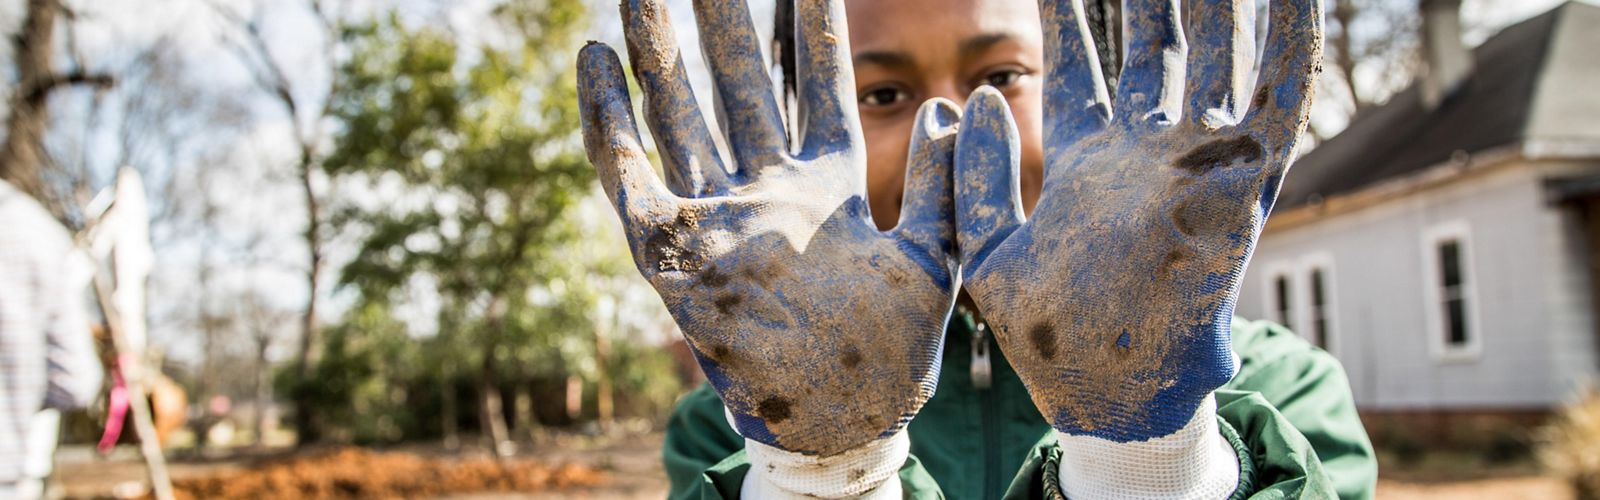 Una joven muestra sus guantes sucios de trabajar en el terreno.